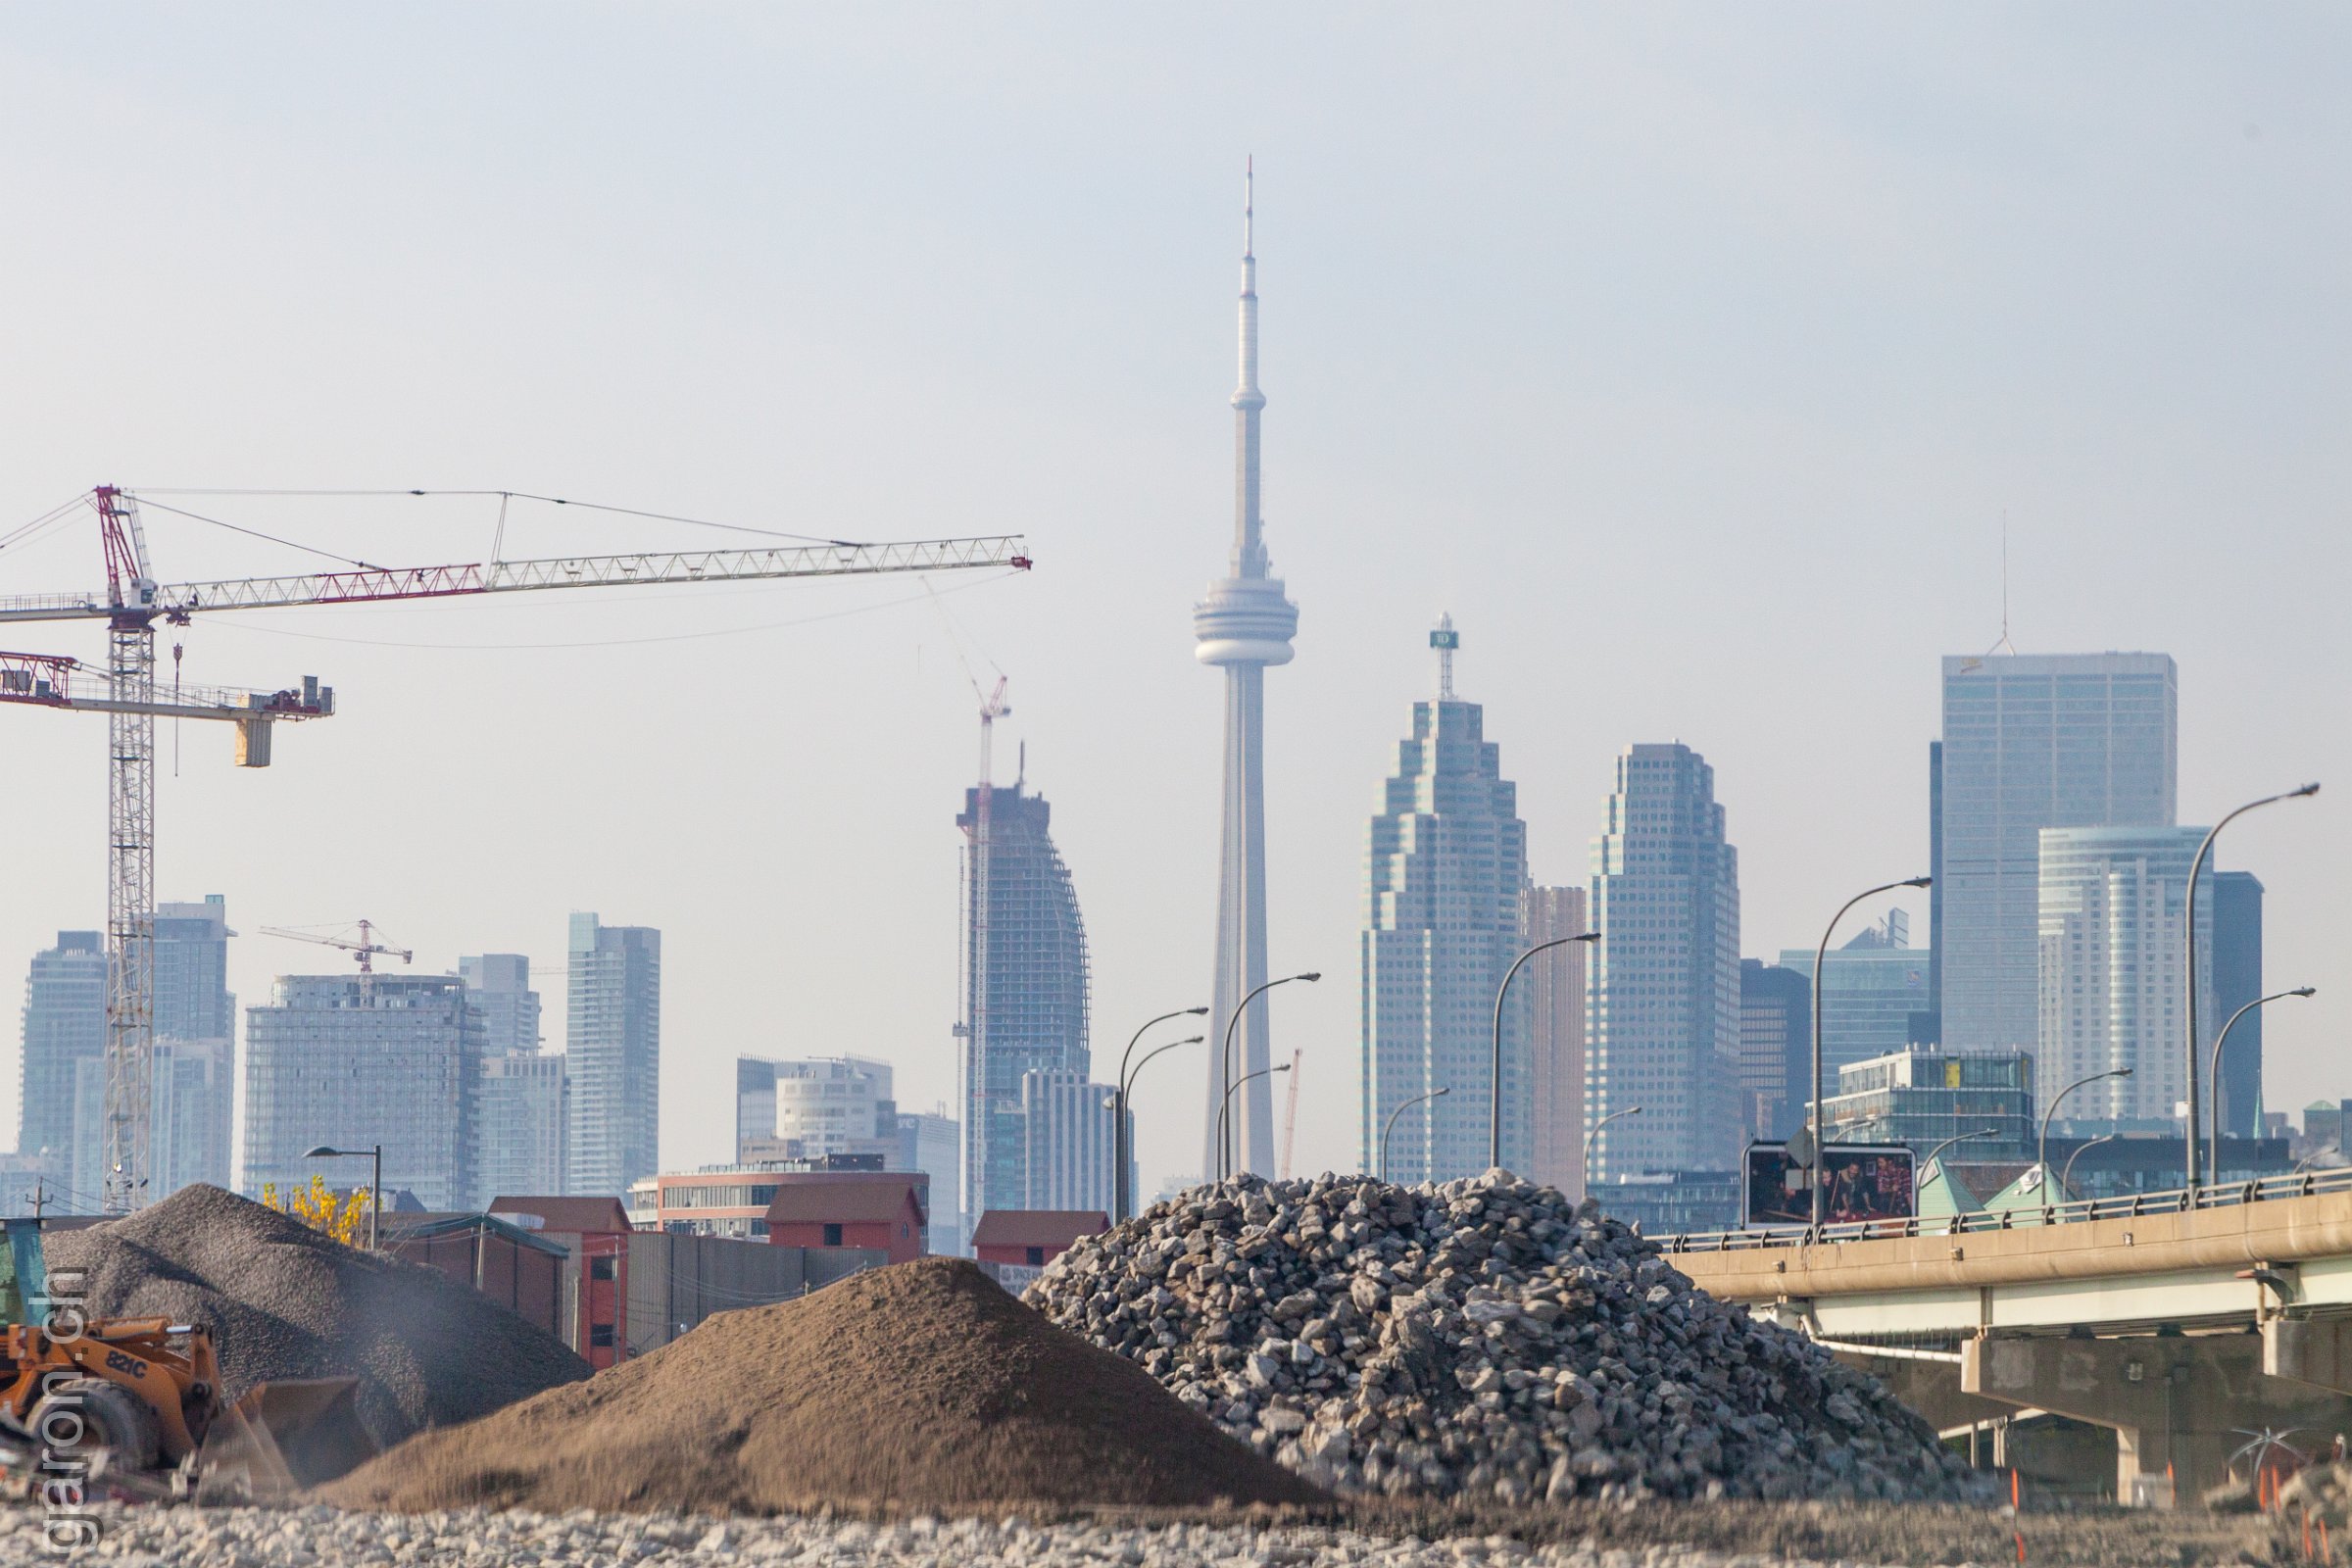 Ontario, Toronto expansion Building site